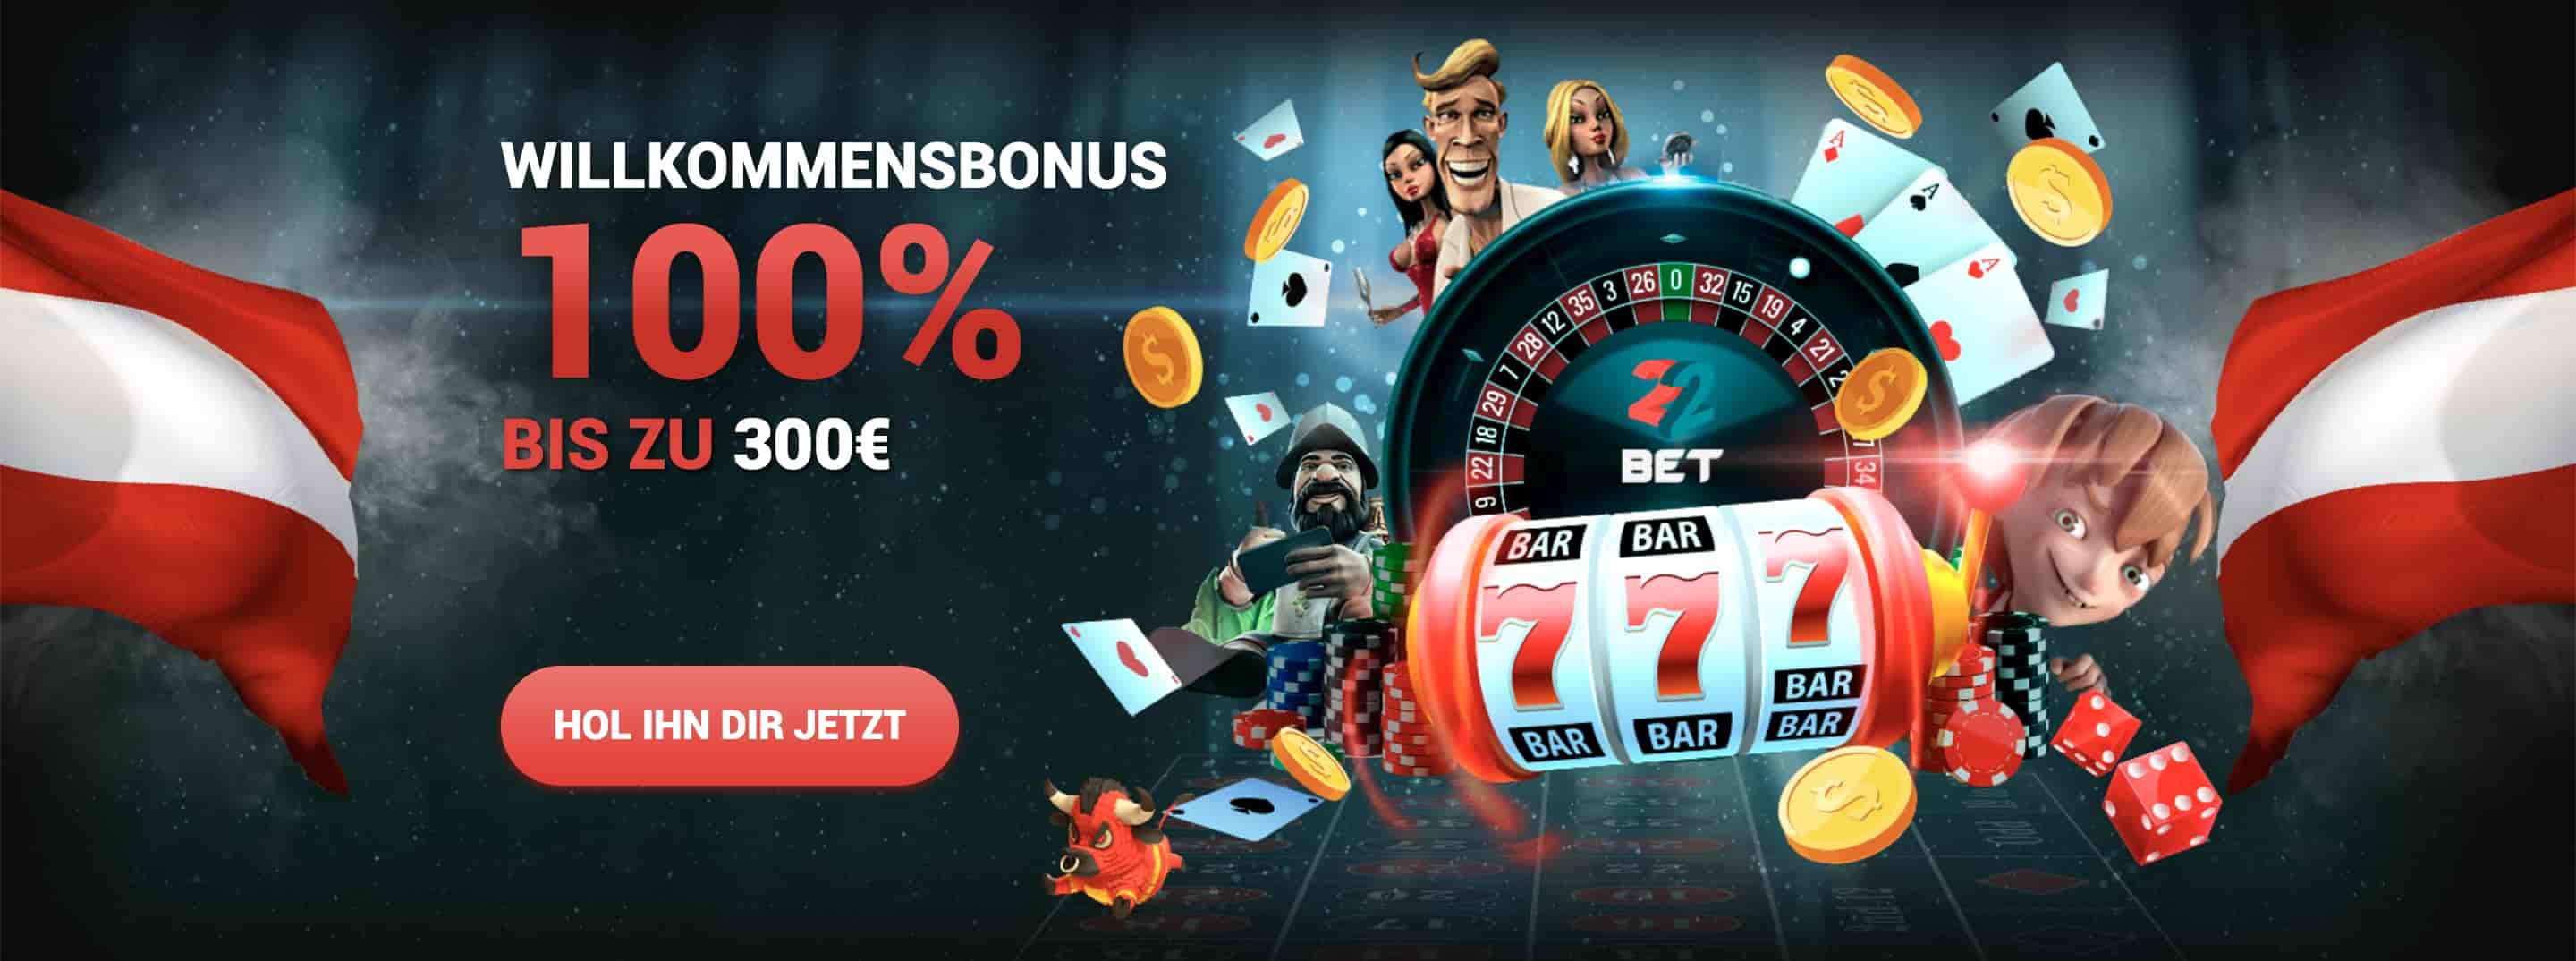 bästa svenska online casino